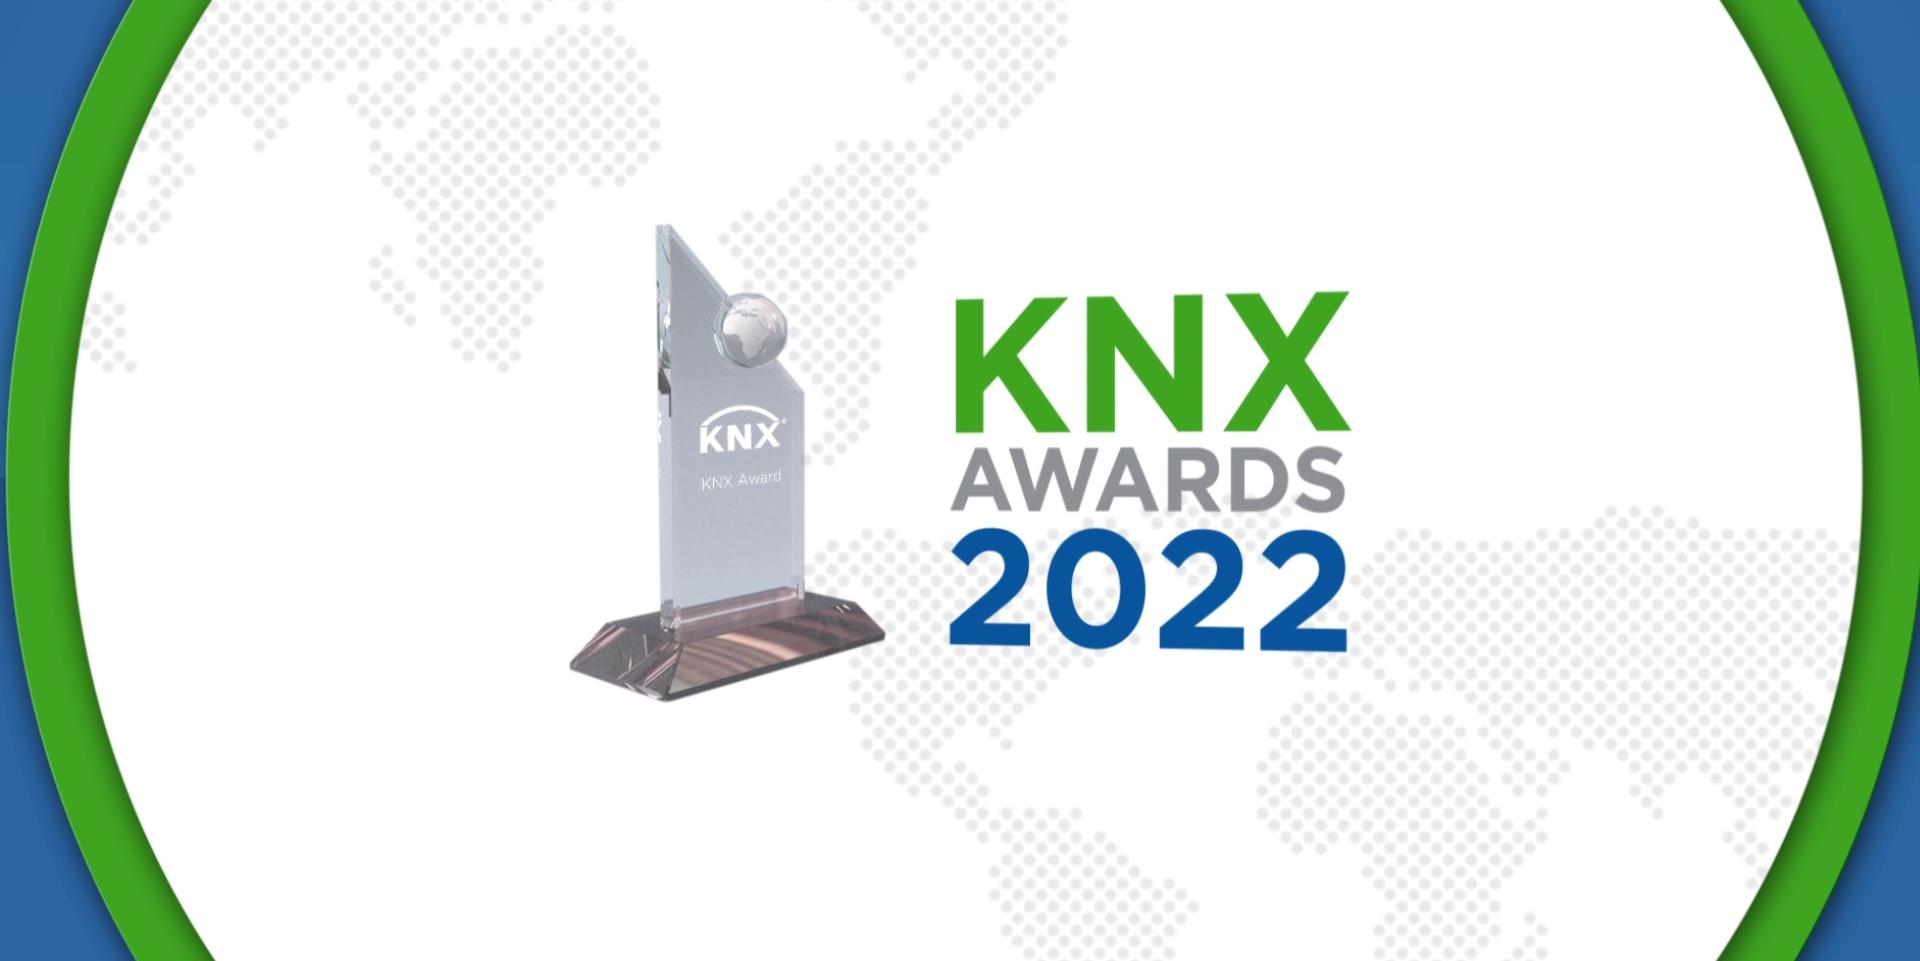 KNX Awards 2022: die 14. Ausgabe würdigt den innovativsten Einsatz von KNX auf der ganzen Welt